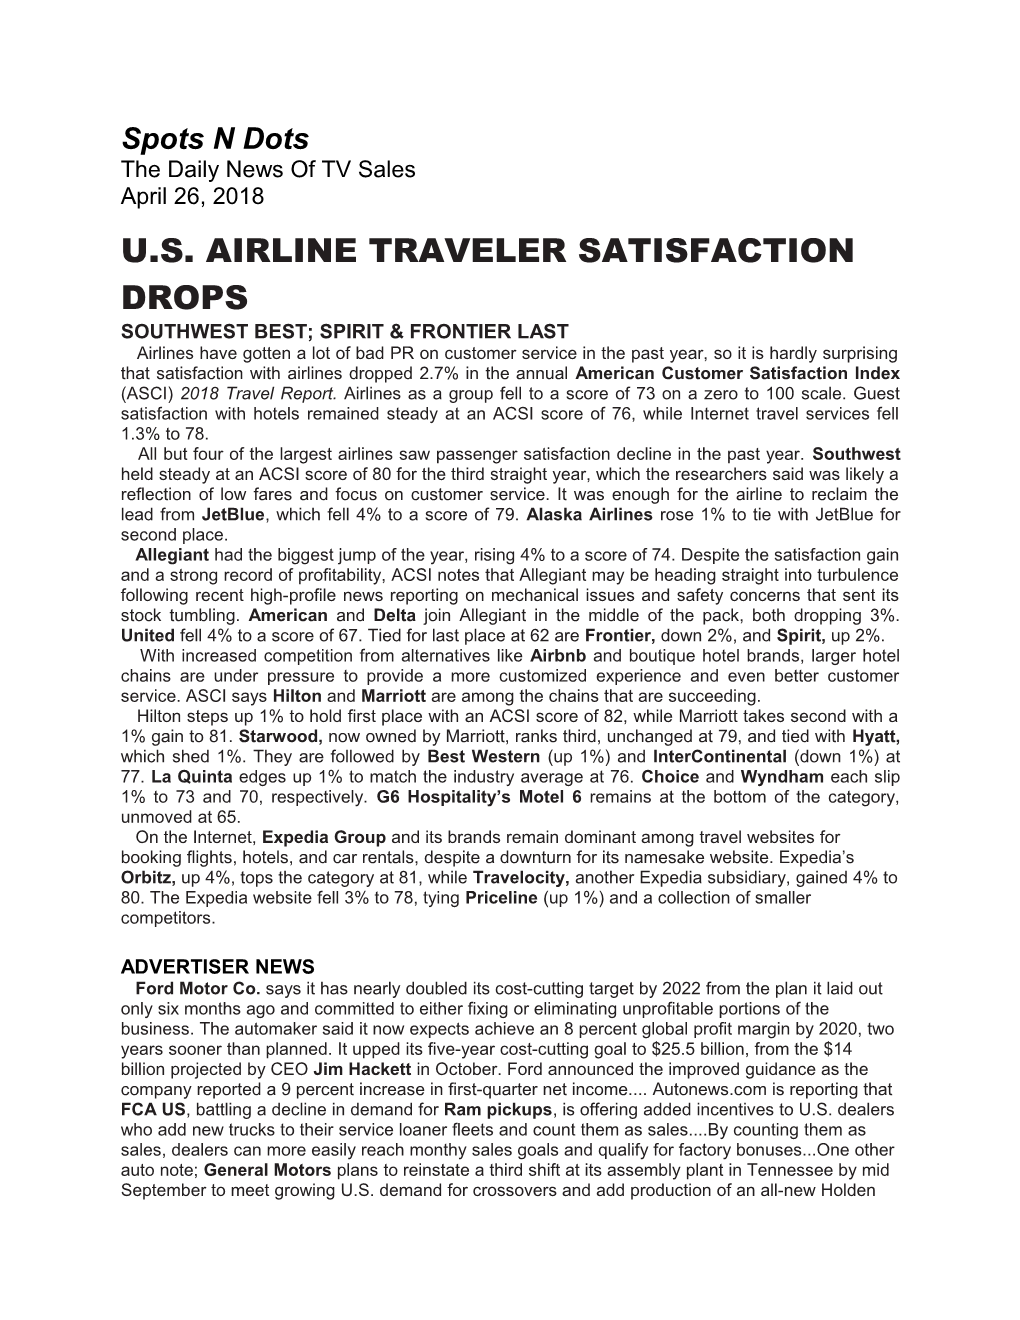 U.S. Airline Traveler Satisfaction Drops